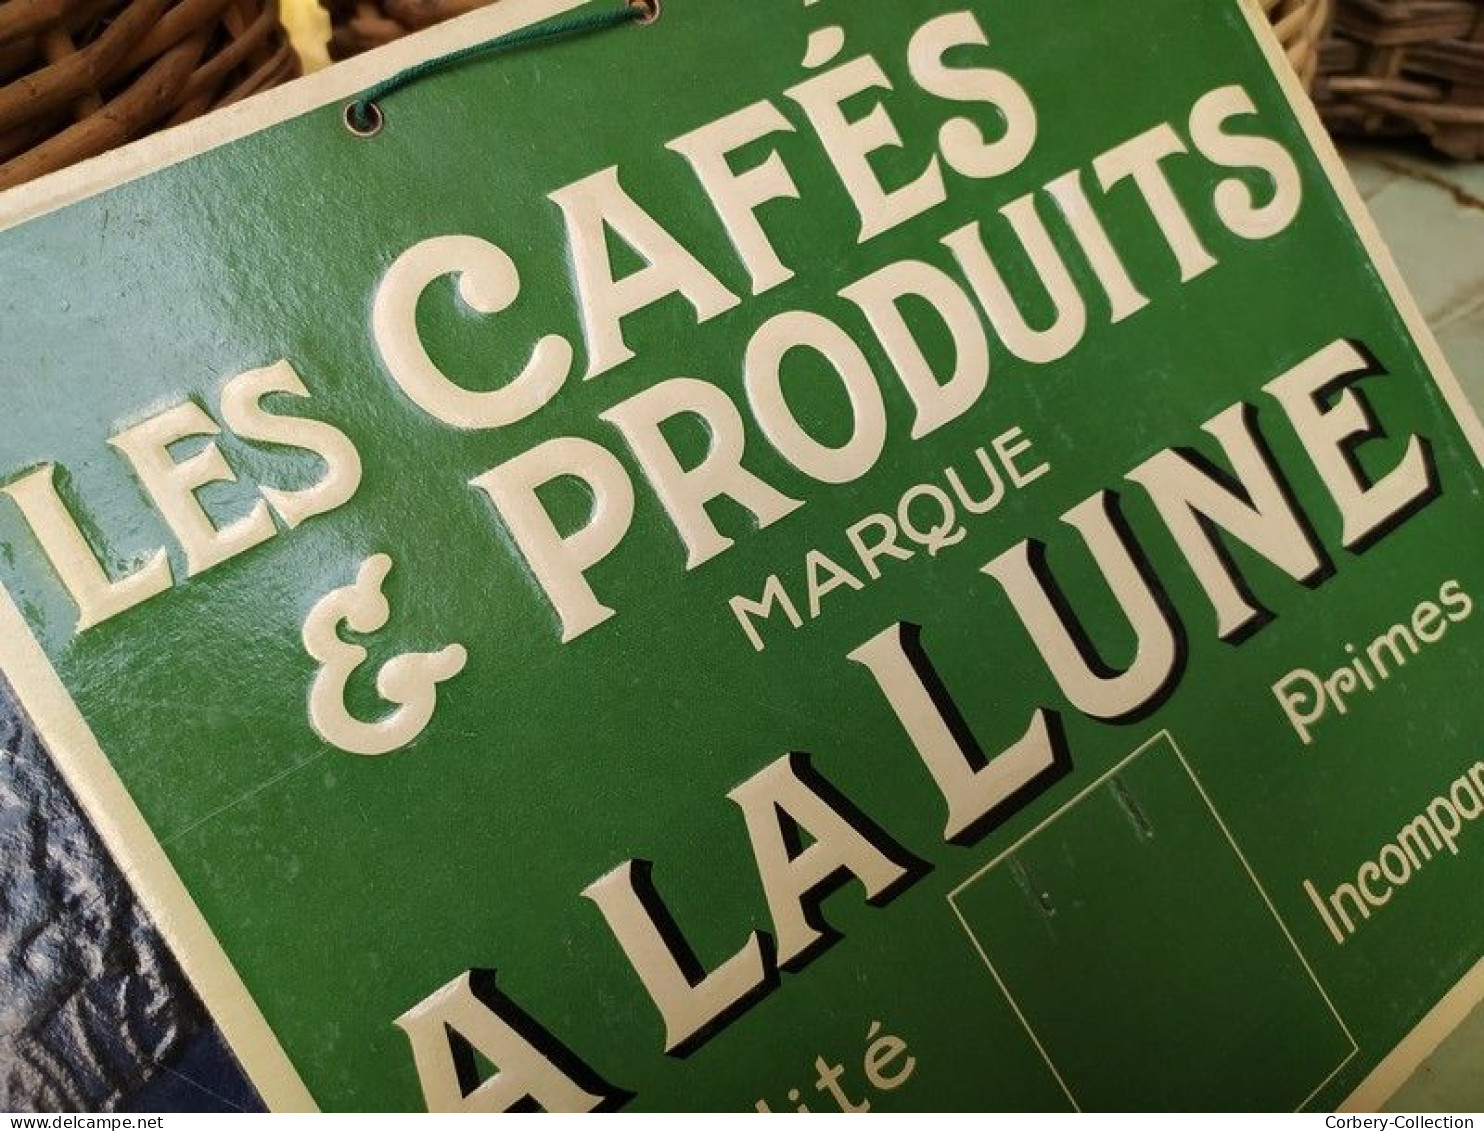 Ancien Carton Publicitaire Les Cafés & Produits Marque A La Lune Calendrier Éphéméride. - Paperboard Signs